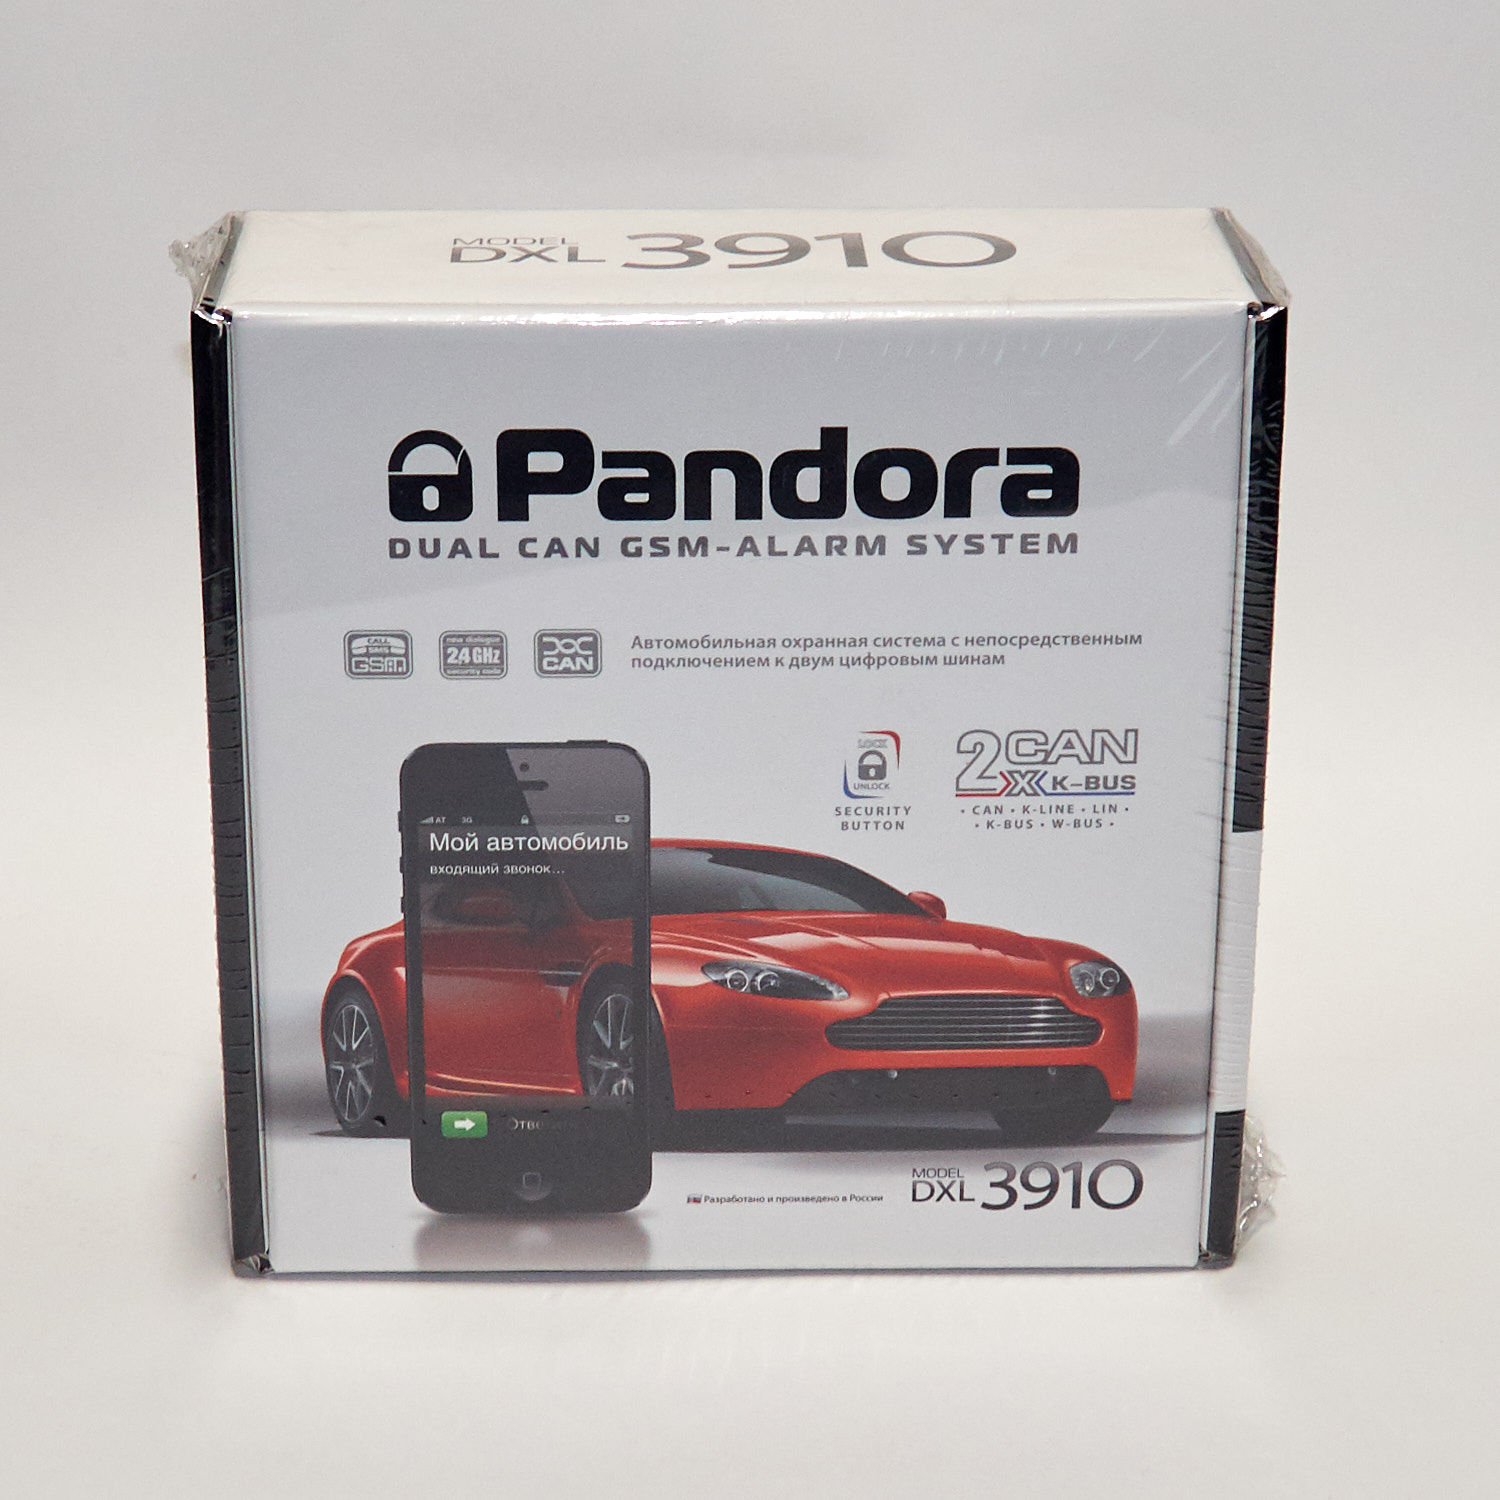 Pandora dxl 3910. Pandora DXL 3910 Pro. Pandora DXL 3910 автозапуск. Сигнализация pandora DXL-3910 упаковка.